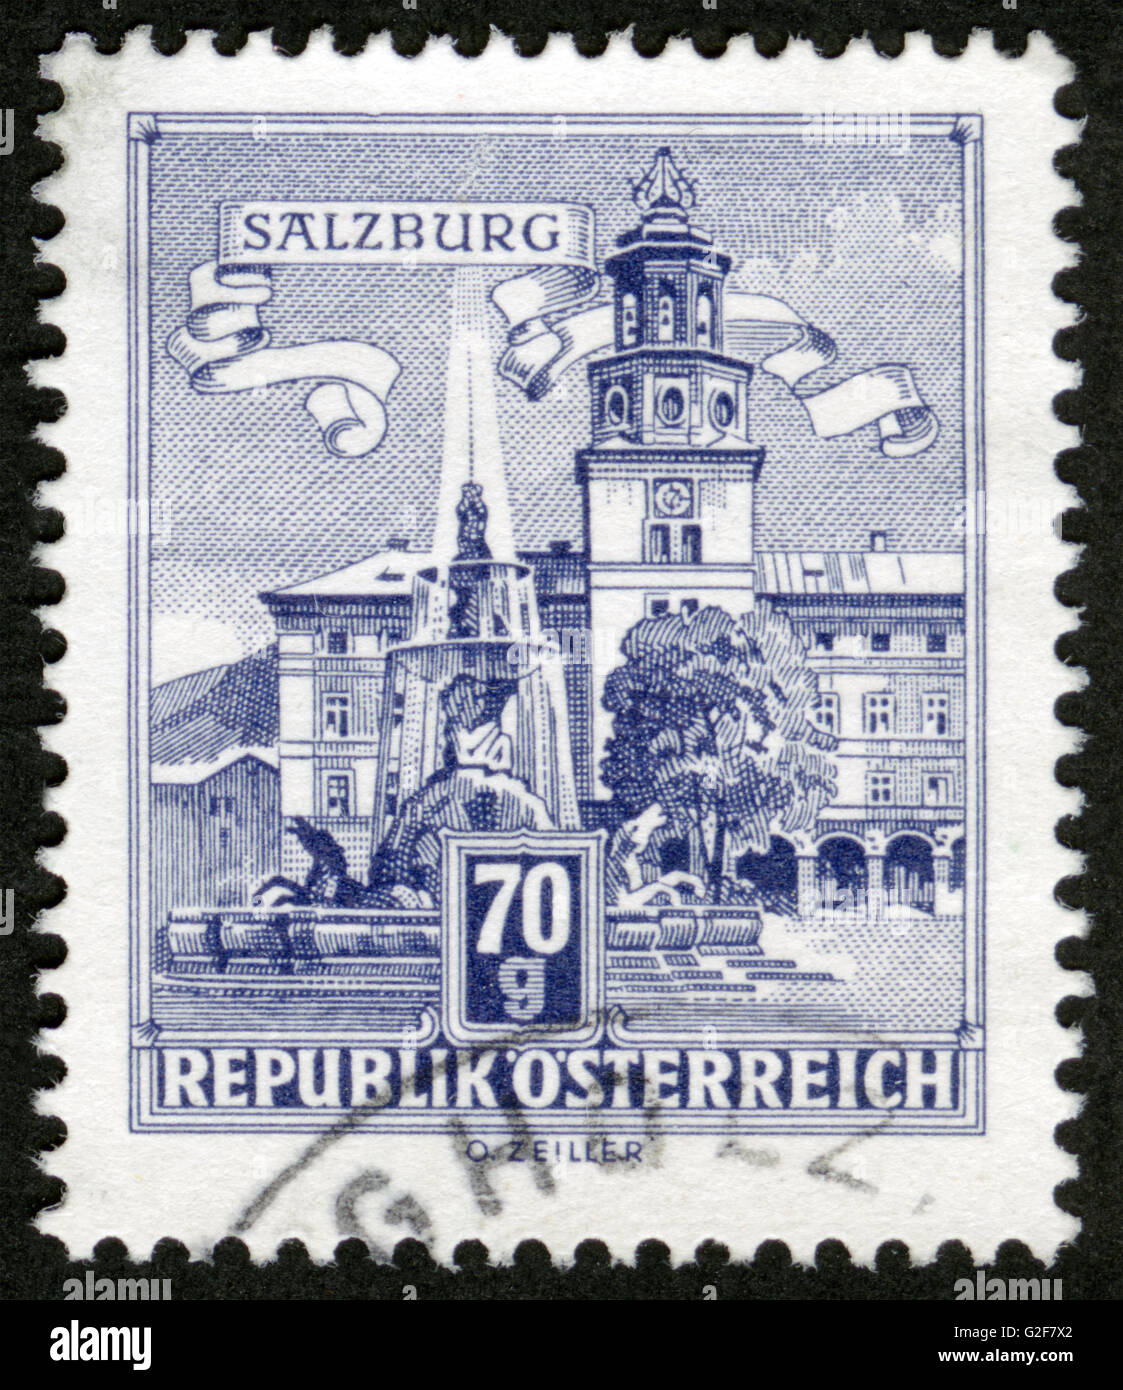 Österreich, Poststempel, Briefmarke, Post Stempel, Architektur, Salzburg Stockfoto